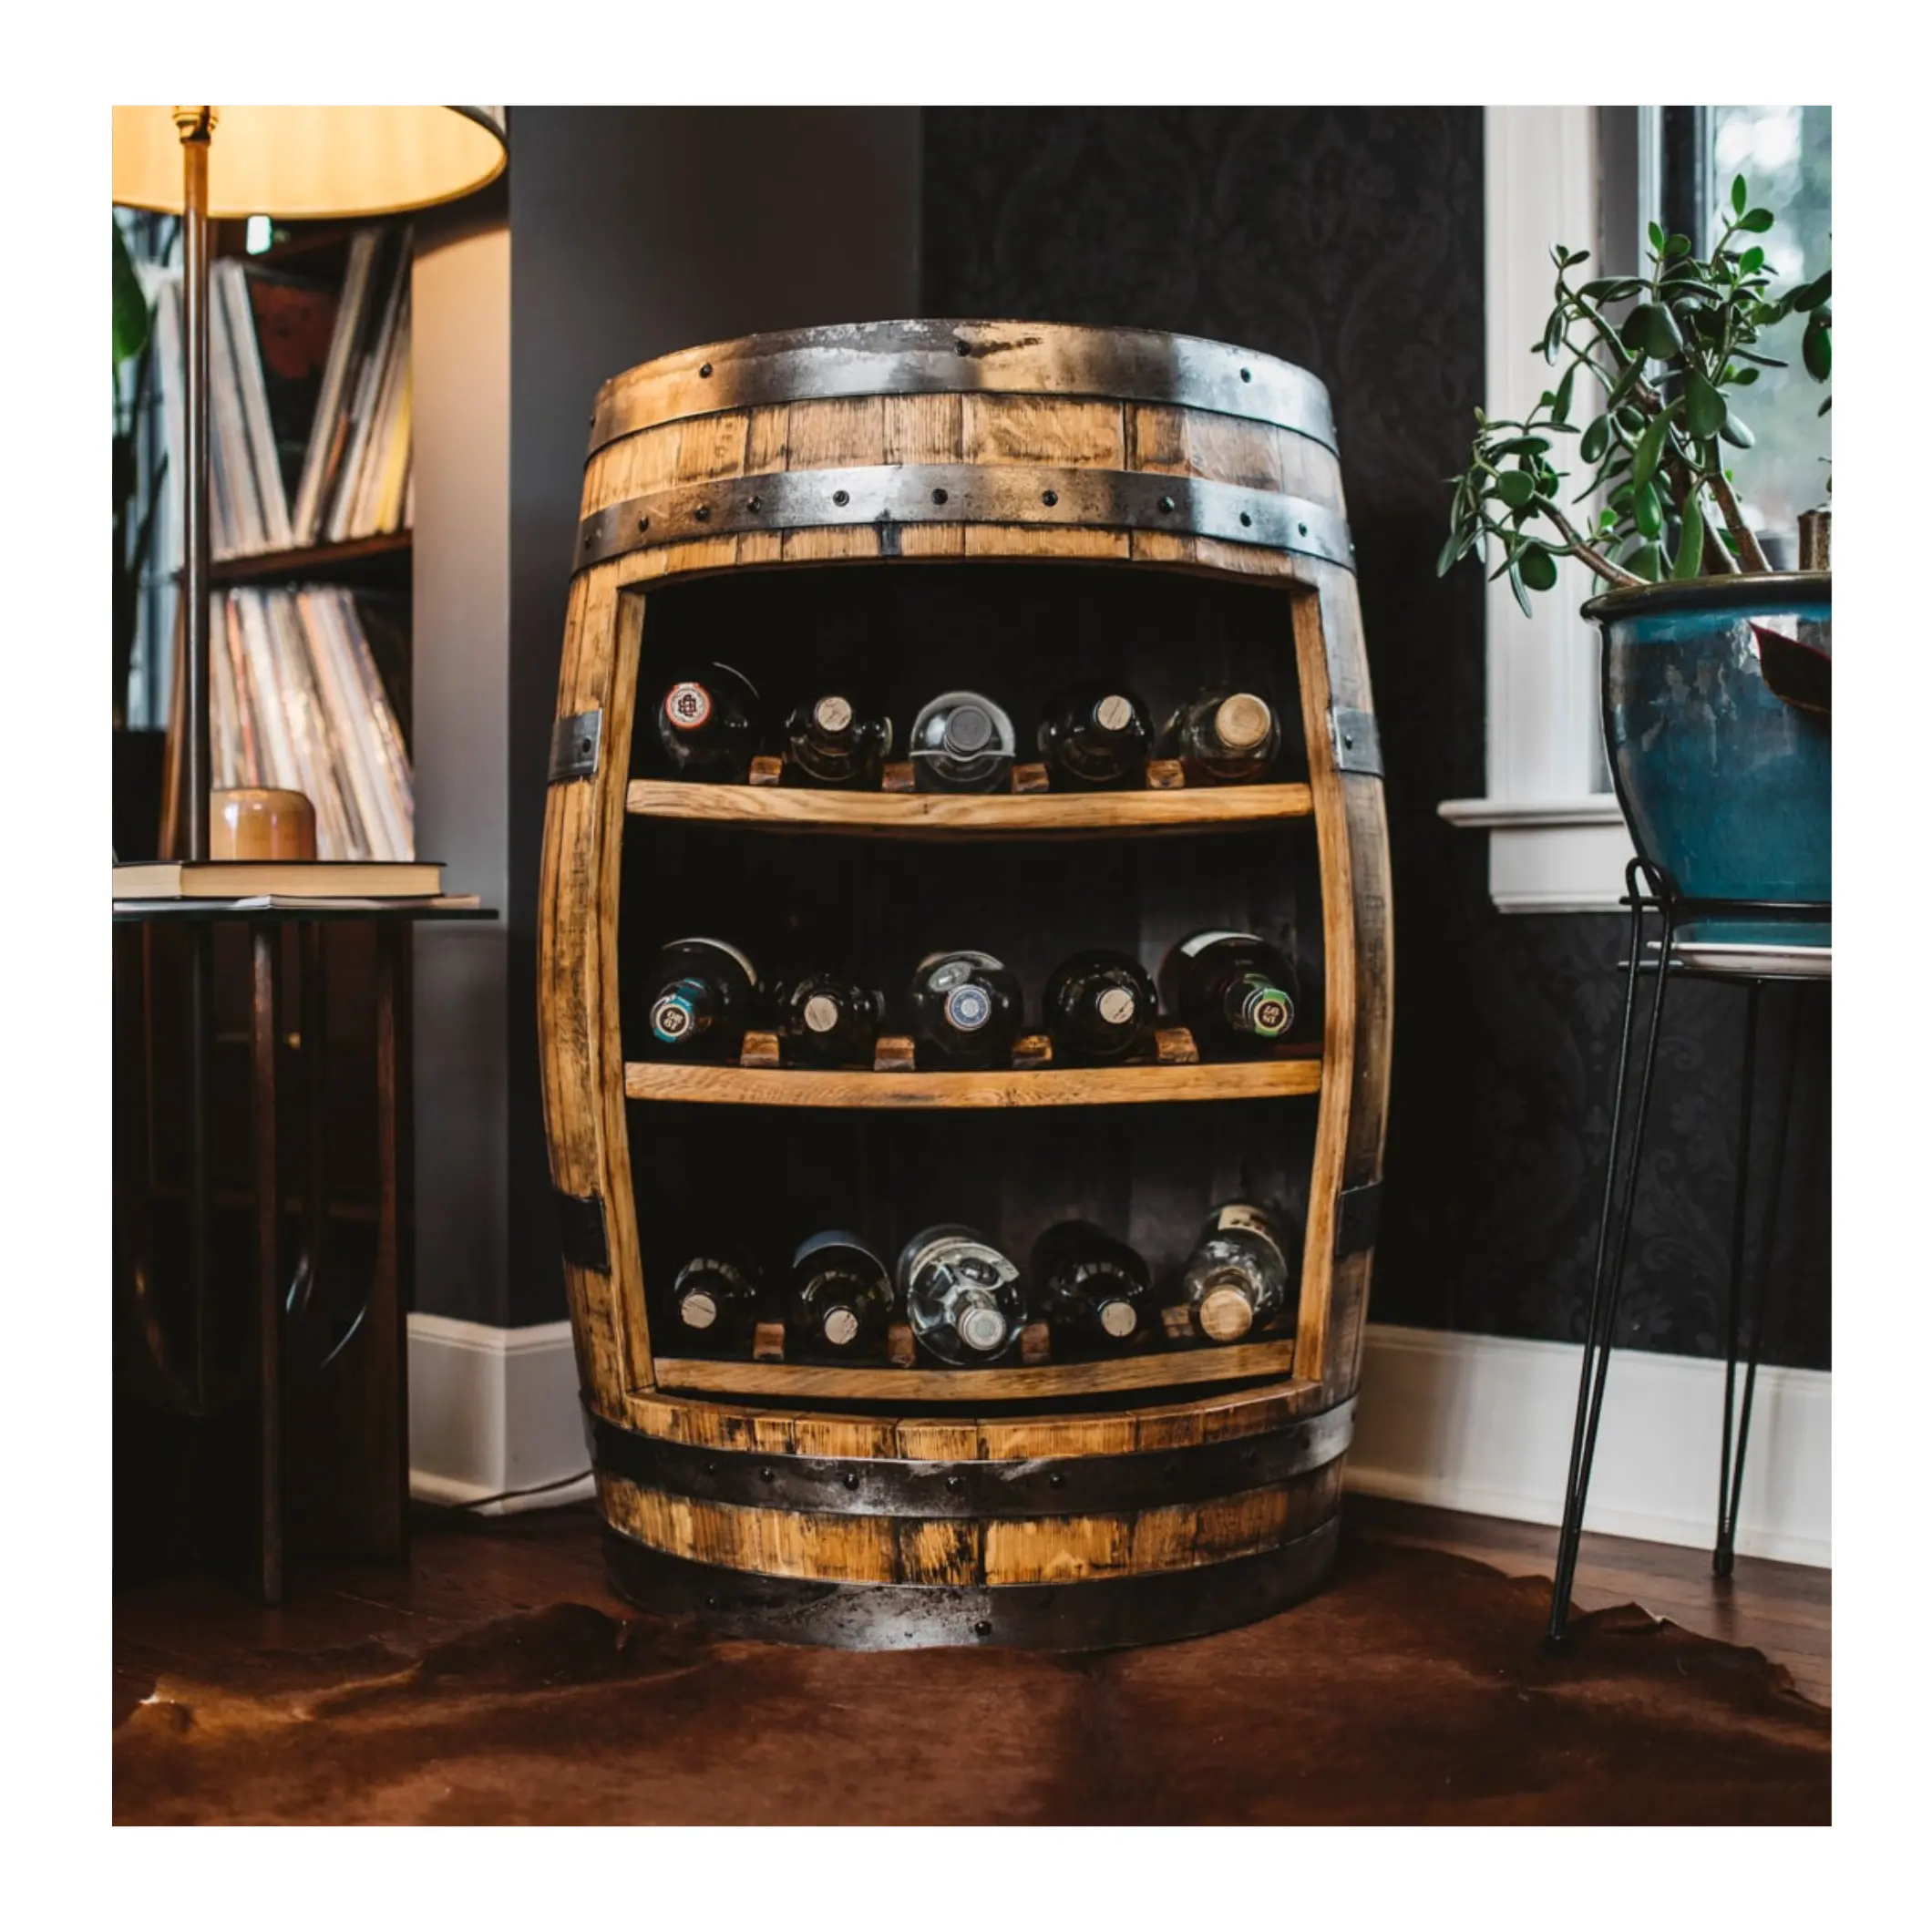 Özel viski likörü varil kuru ev dolabı | Açık konsept şarap fıçısı raf | Şarap şişeleri ekran depolama varil